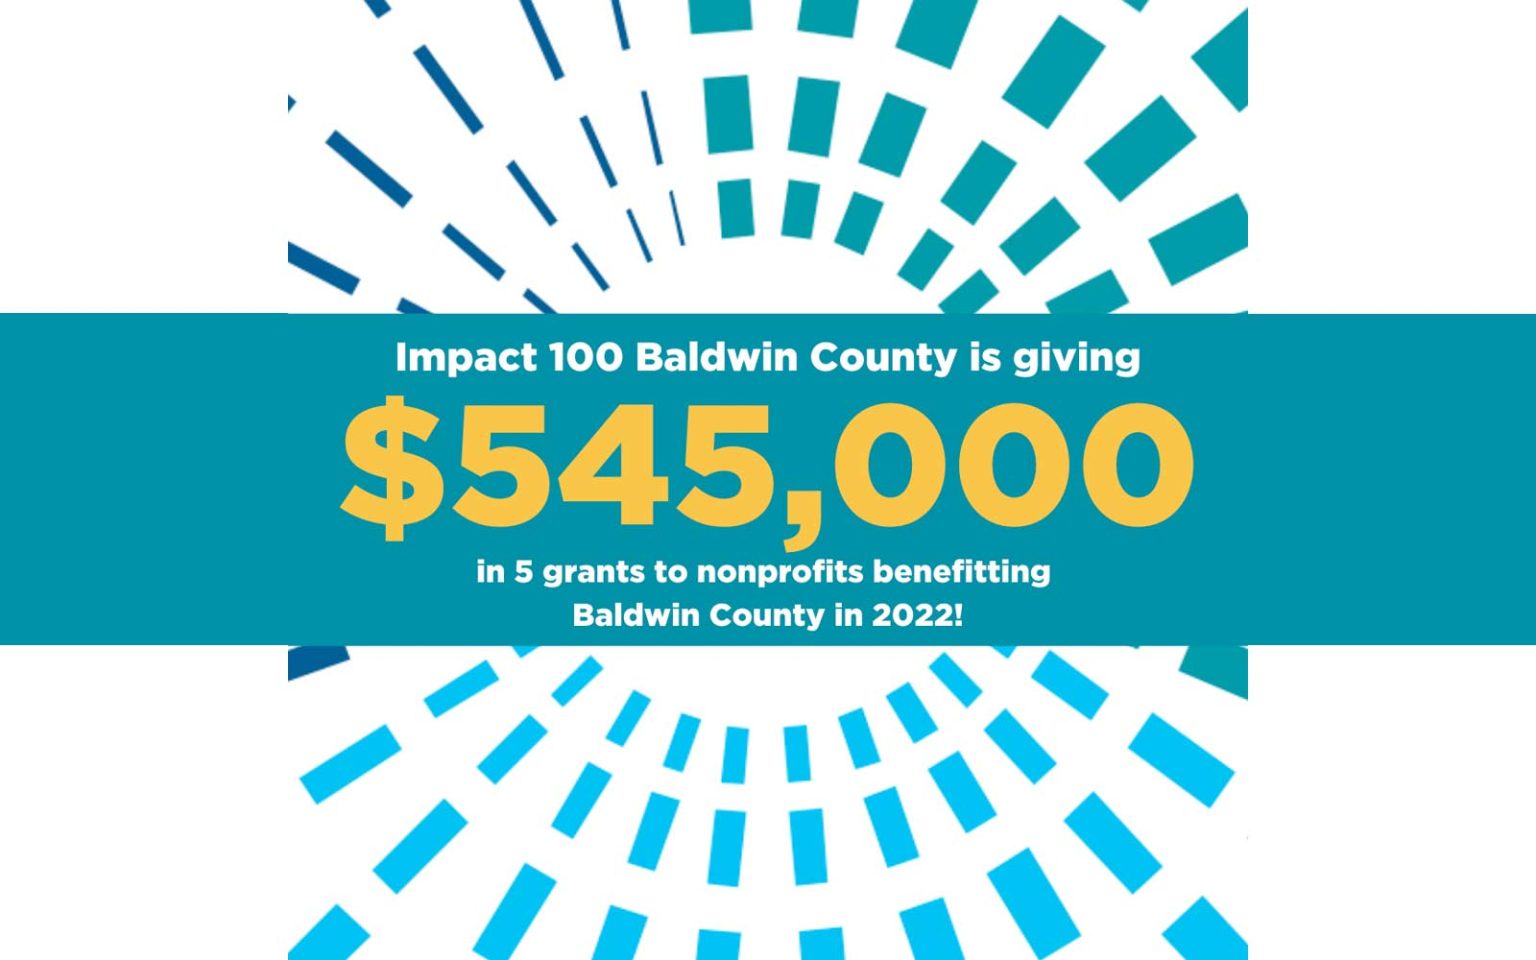 Impact 100 Baldwin County To Award 545,000 In Grants